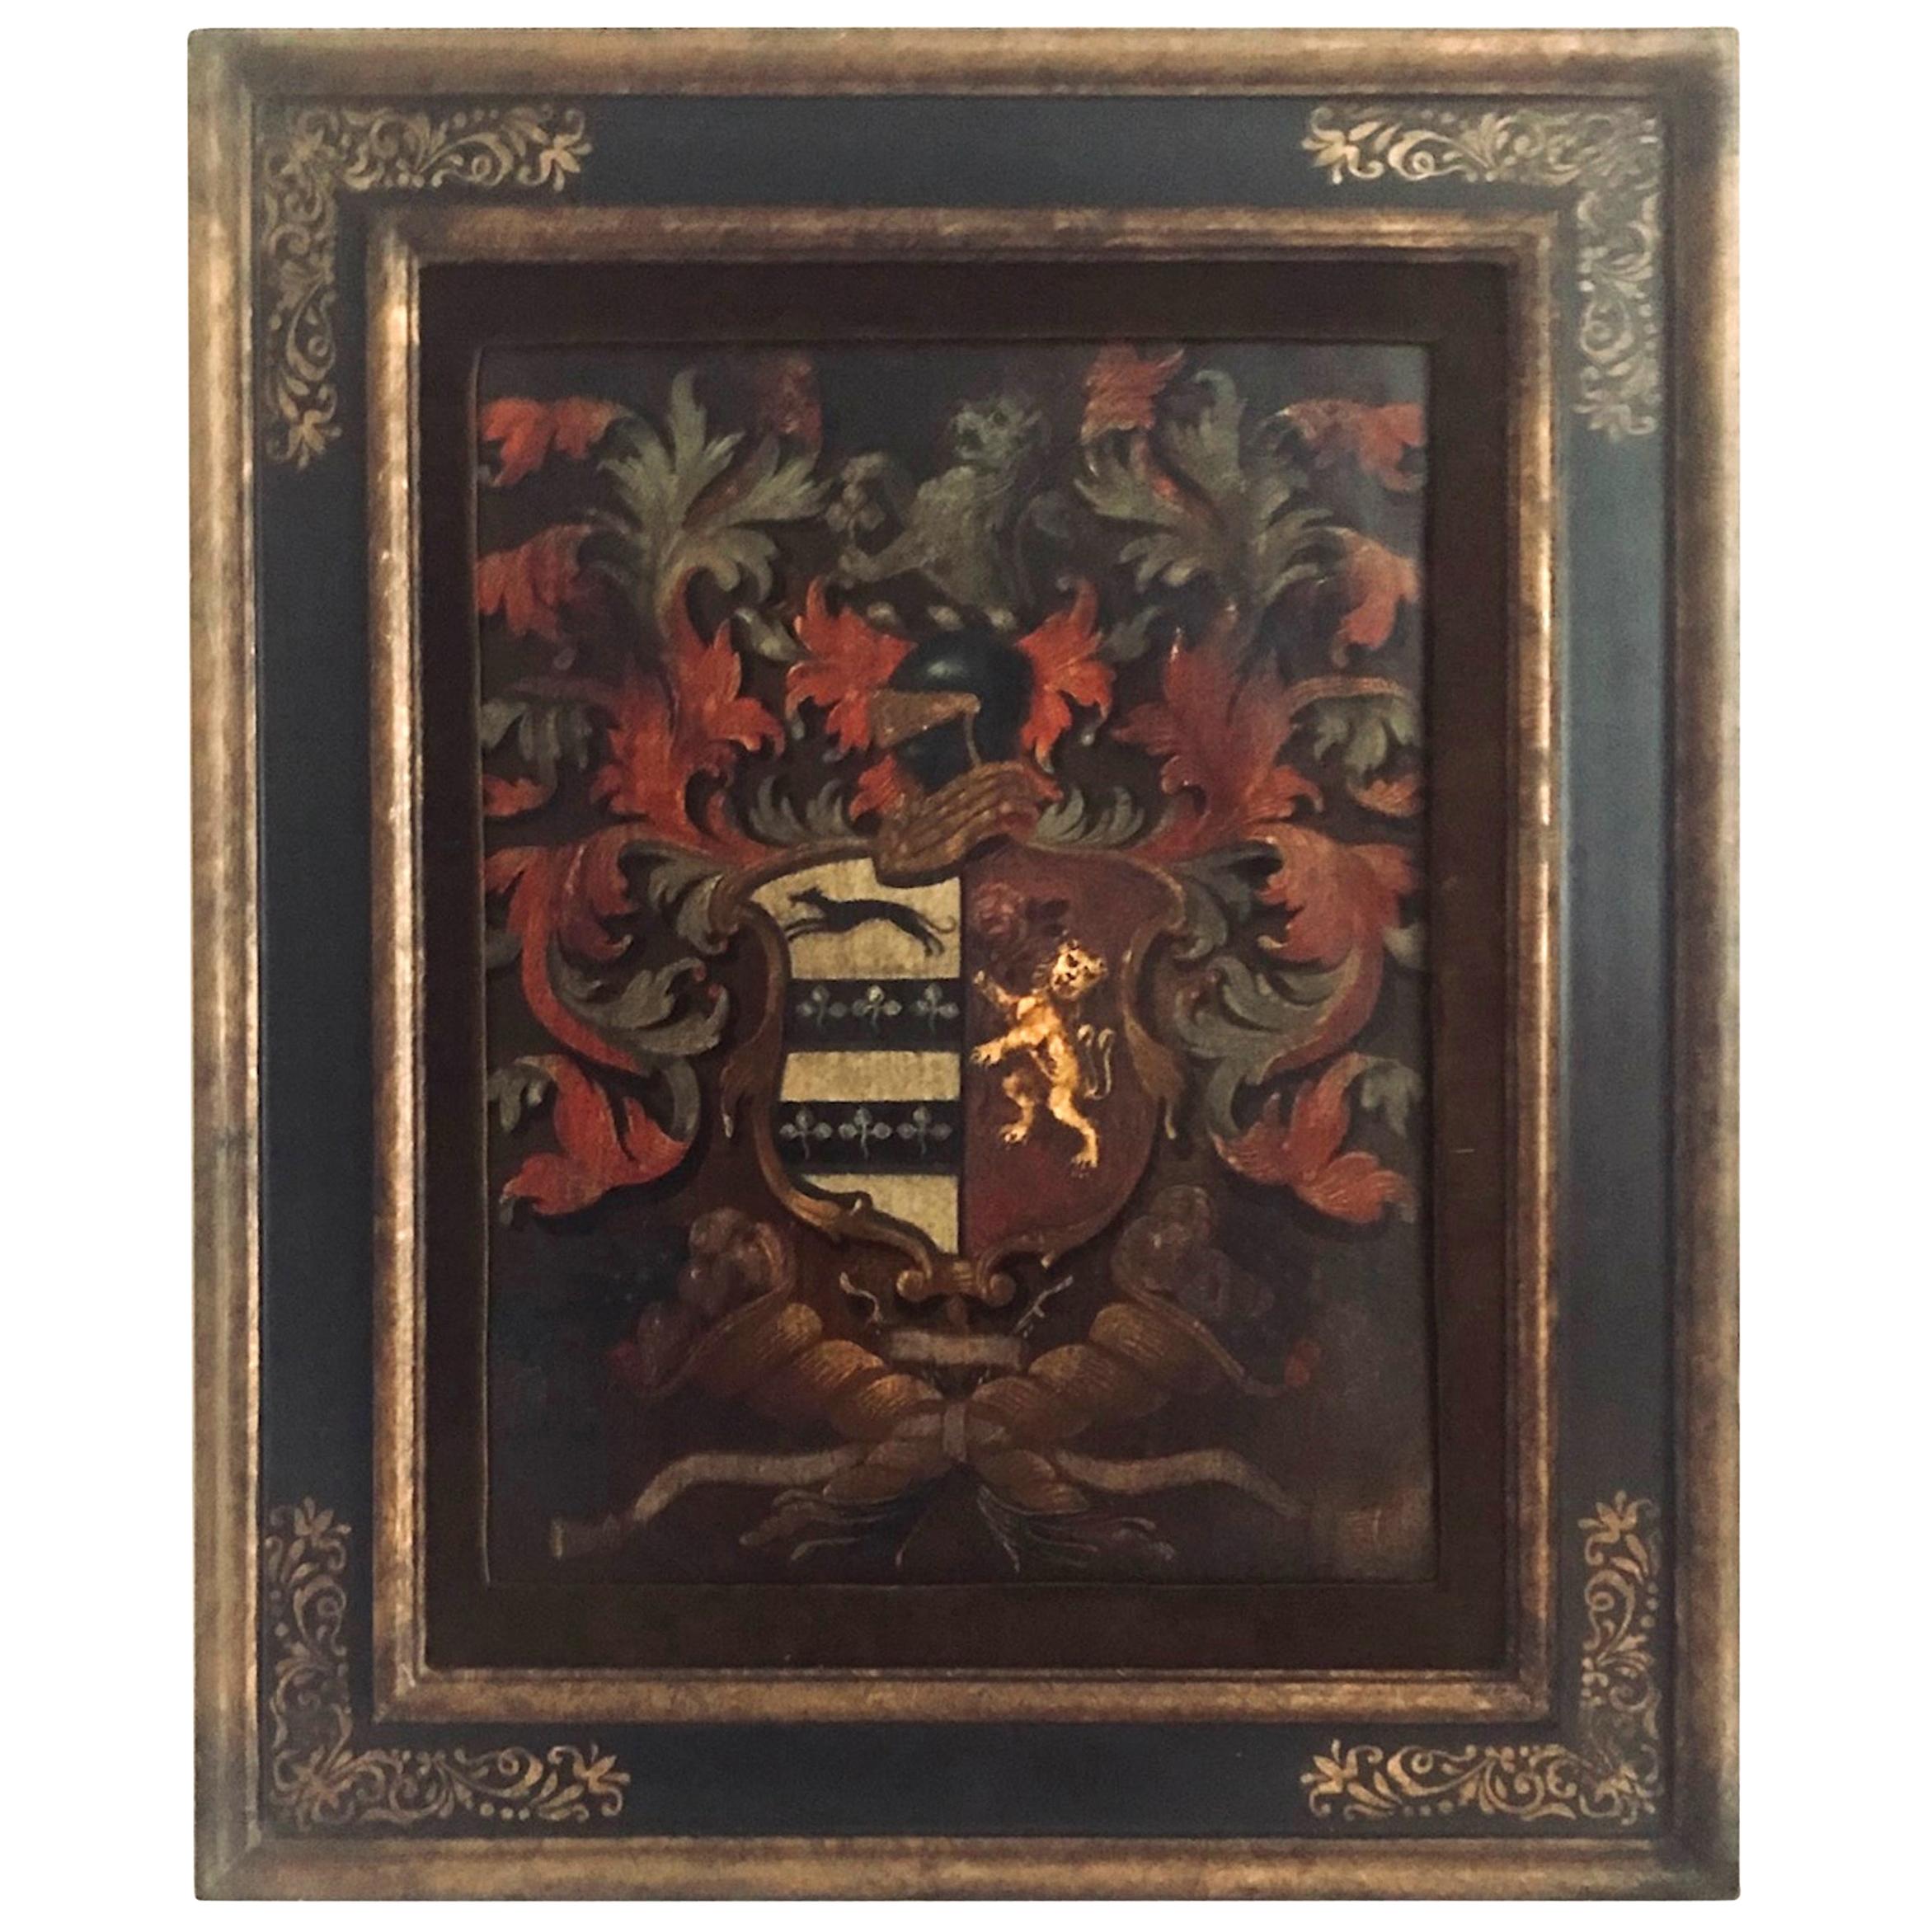 Antike englische Palmer Familienwappen gemalt Öl auf Brett 

Aufwändige Wappenmalerei der englischen Familie Palmer von Dorney Court in Buckinghamshire. Das farbenfrohe Wappen wurde 1824 meisterhaft und kunstvoll gemalt. Es wird begleitet von der